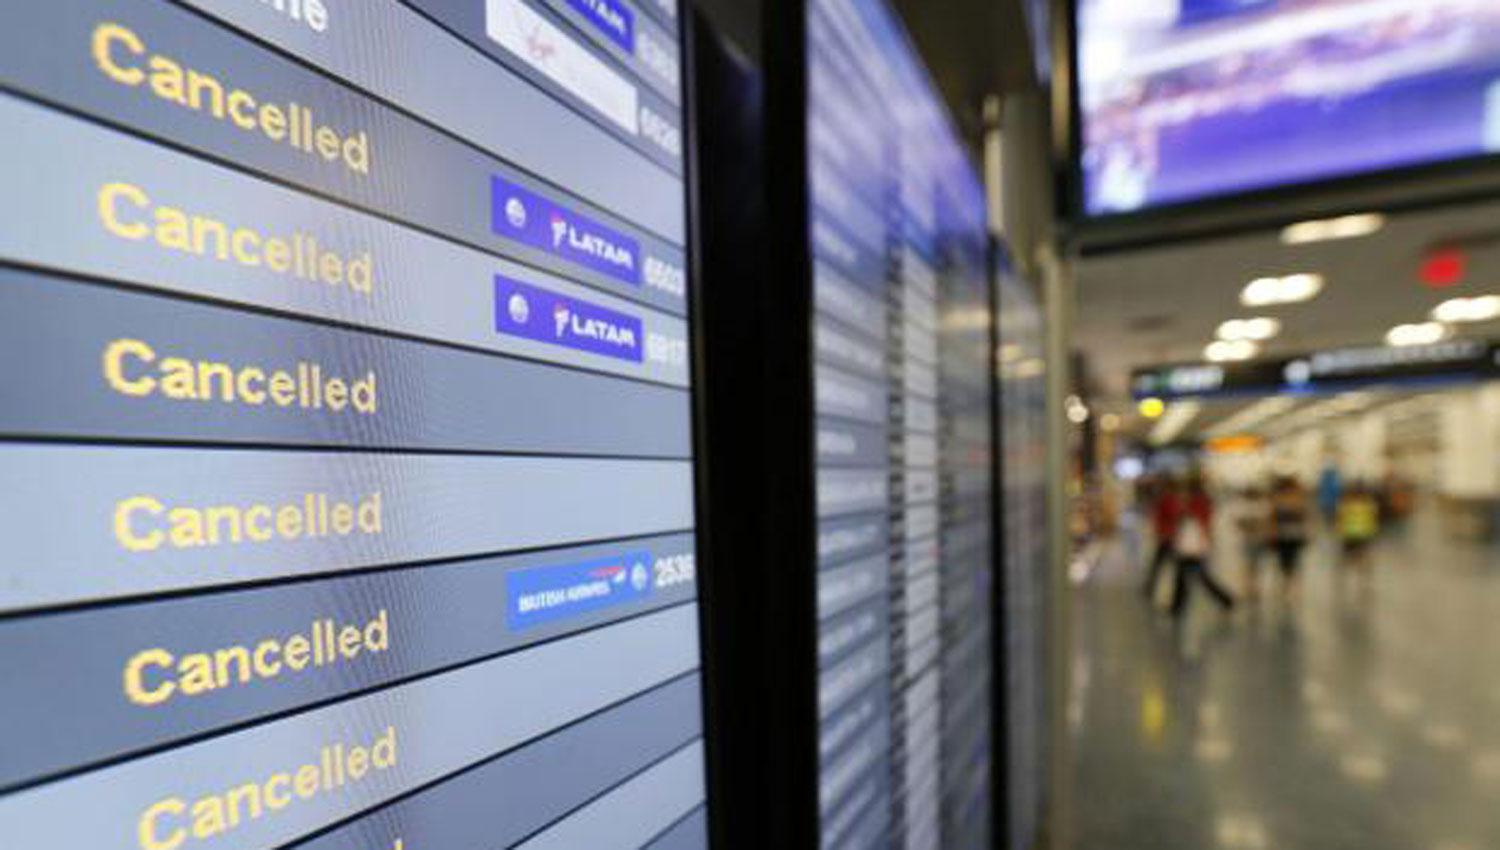 AEROPUERTO DE MIAMI. La única palabra que se repite en todas las pantallas del aeropuerto de Miami es cancelado. FOTO TOMADA DE THE INDEPENDENT